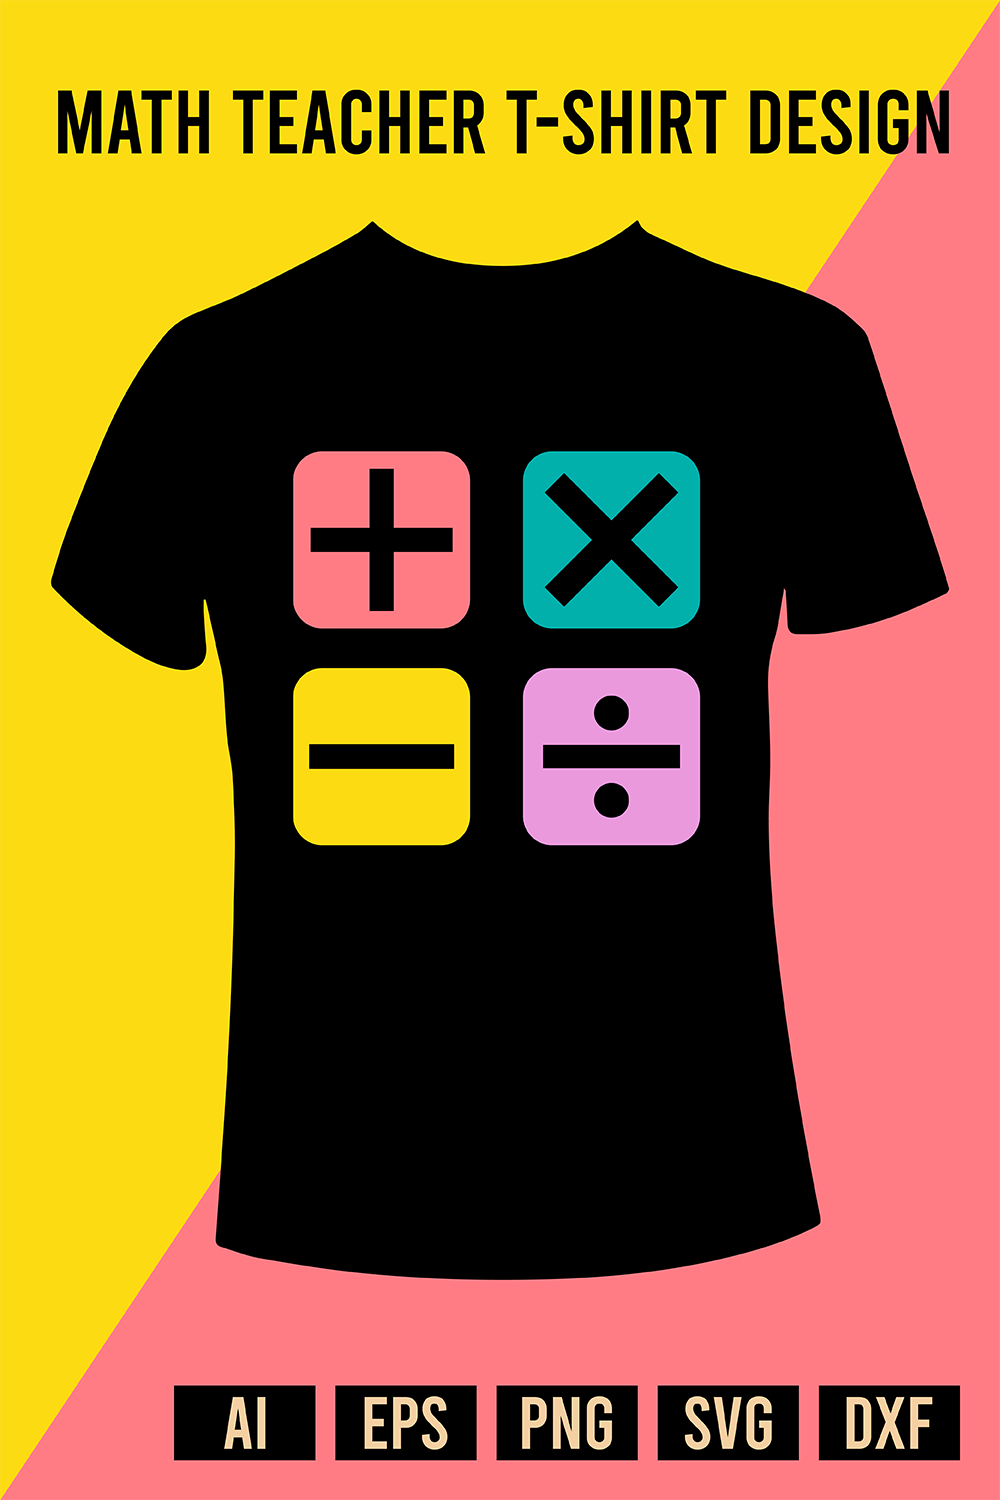 Math Teacher T-Shirt Design pinterest image preview.